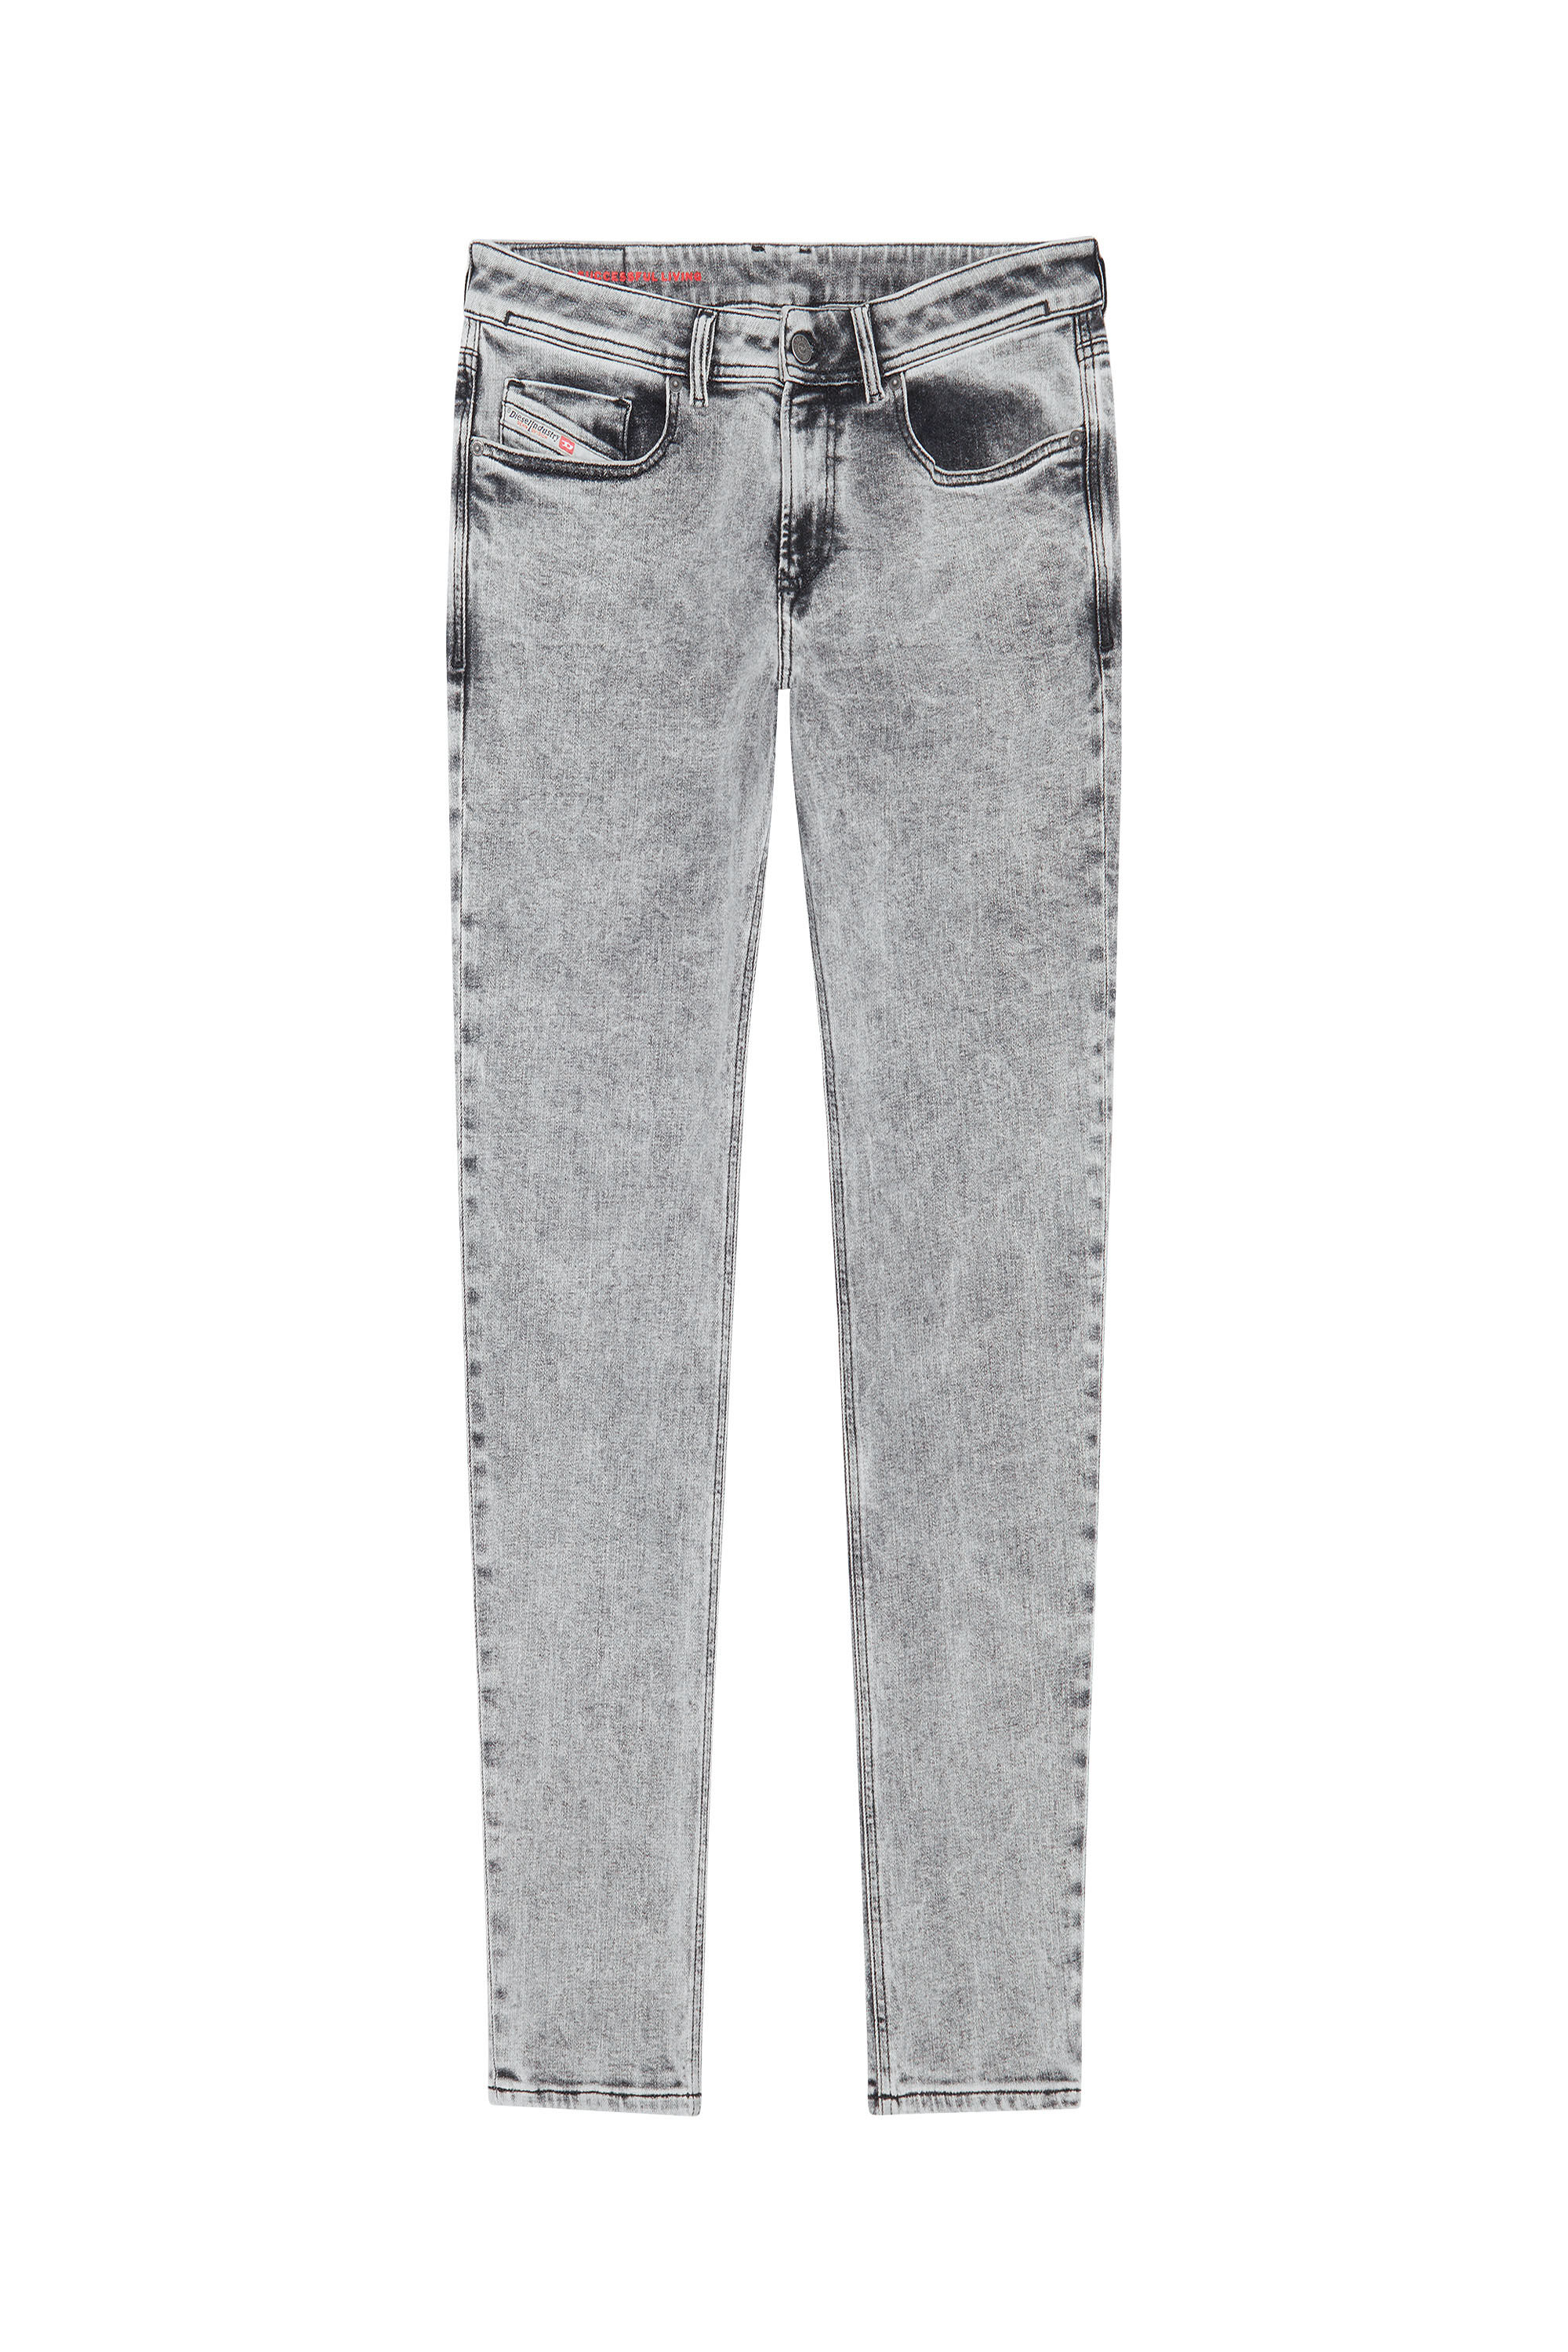 Diesel - Skinny Jeans 1979 Sleenker 09D89, Light Grey - Image 2